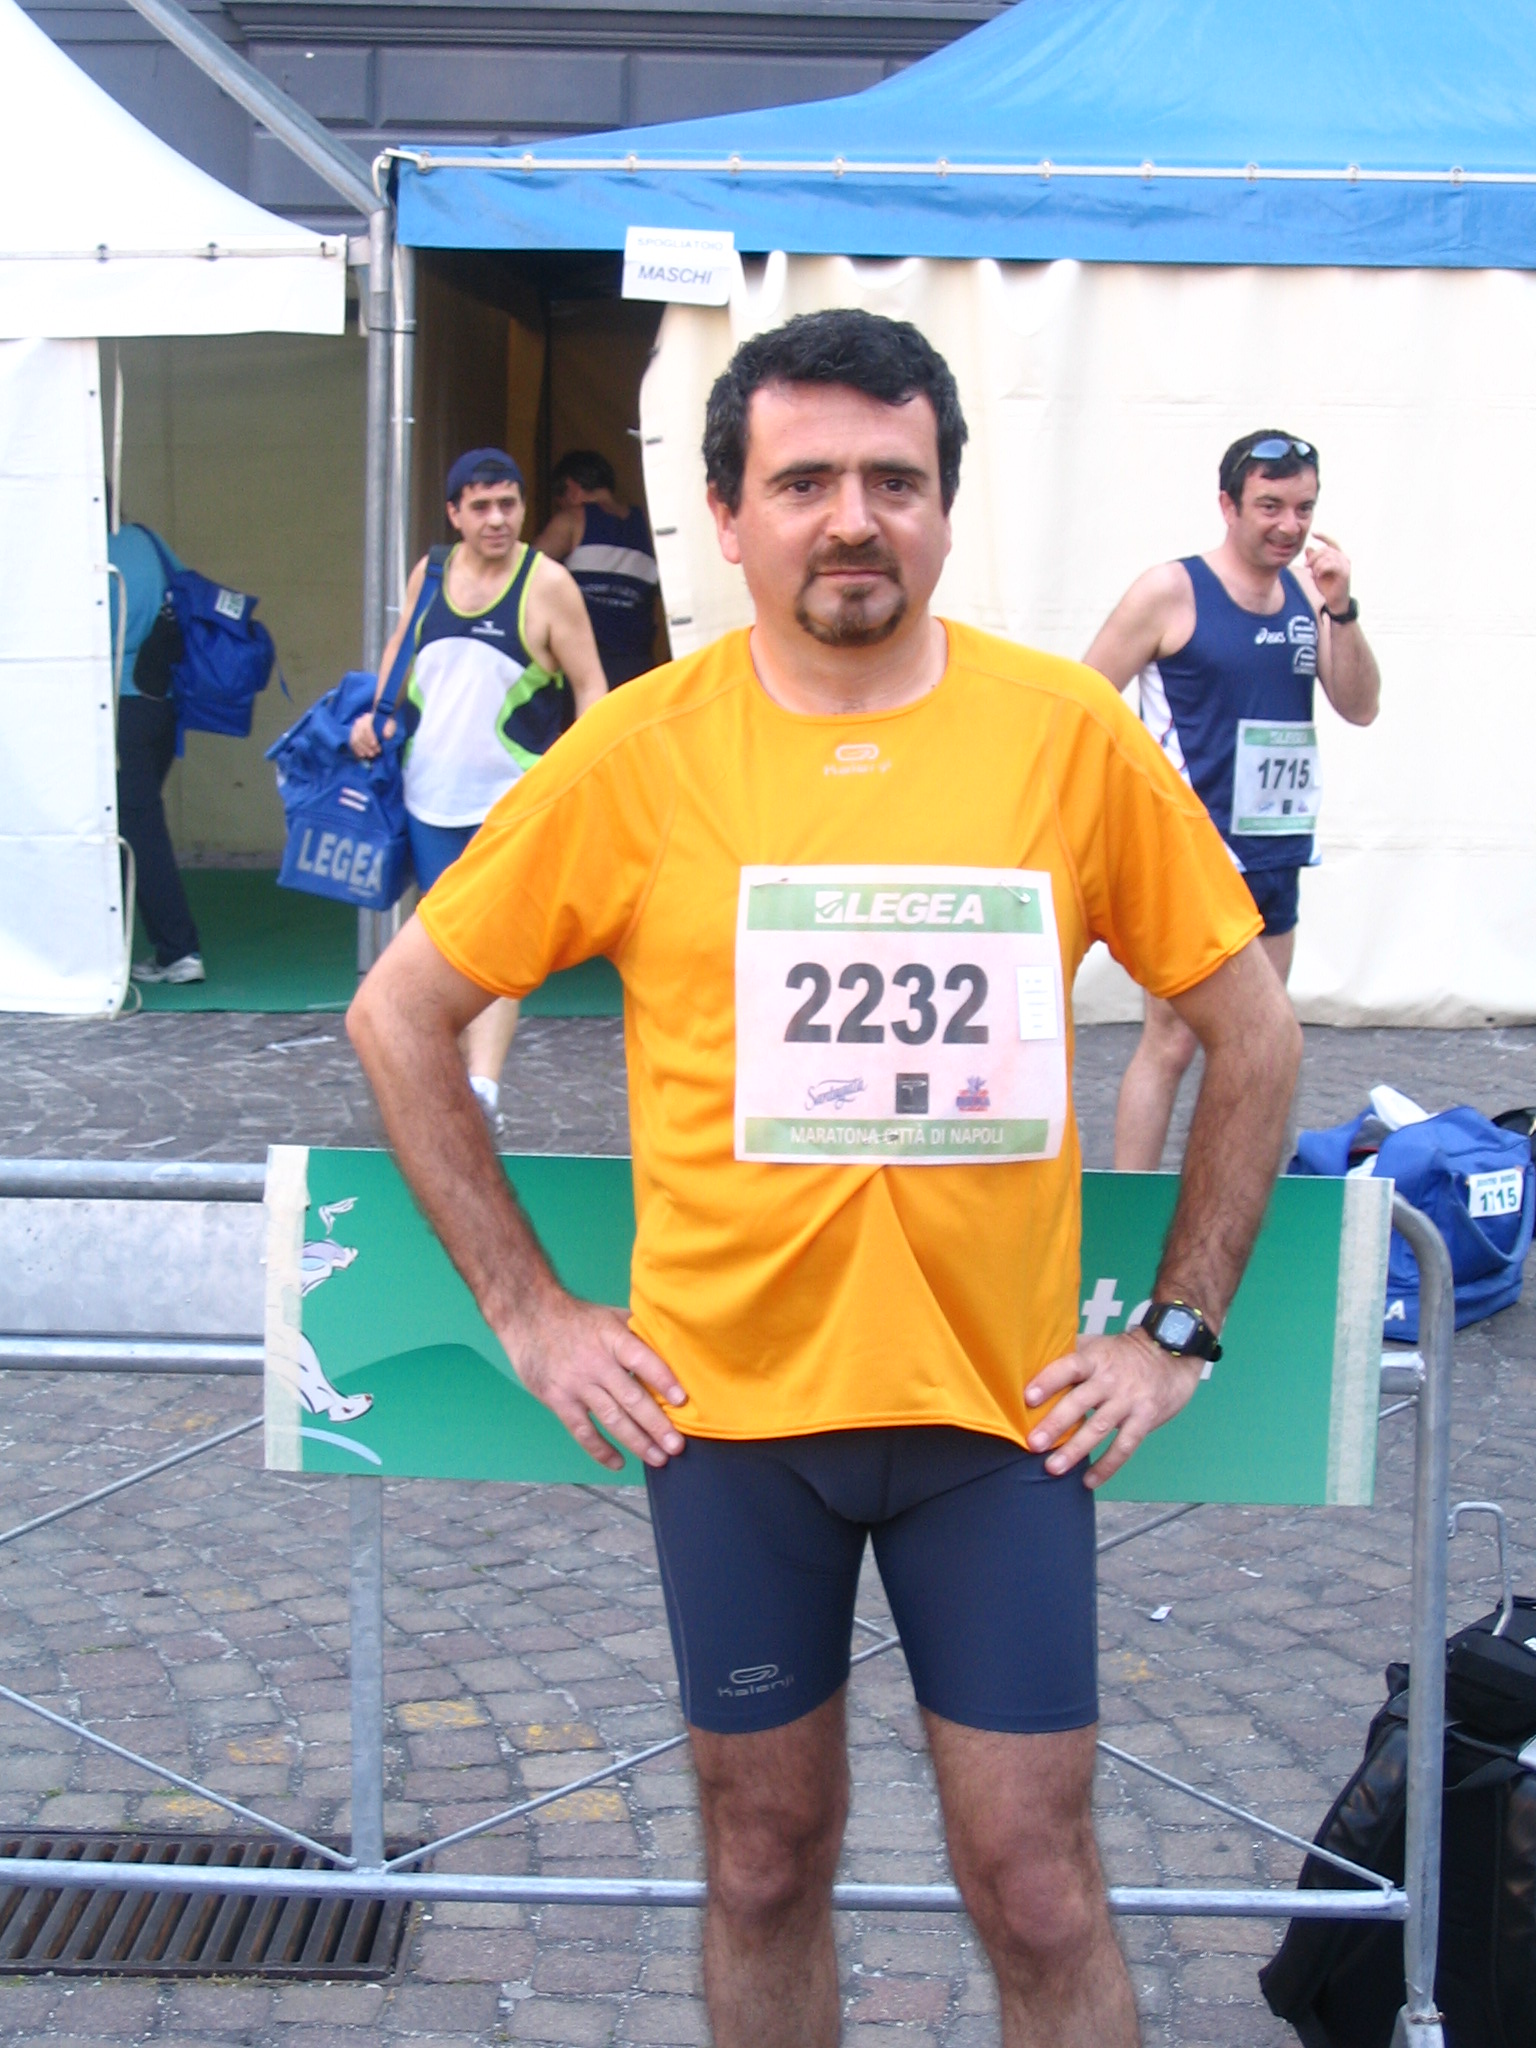 La mia prima gara la corsi il 22 aprile del 2007. Fu la Mezza Maratona di Napoli che si svolgeva in contemporanea alla IX edizione della Maratona di Napoli. Ricordo l’emozione che provai quando, giunto al villaggio maratona in Piazza del Plebiscito, appuntai sulla maglia il pettorale 2232 che avevo ritirato il giorno prima.